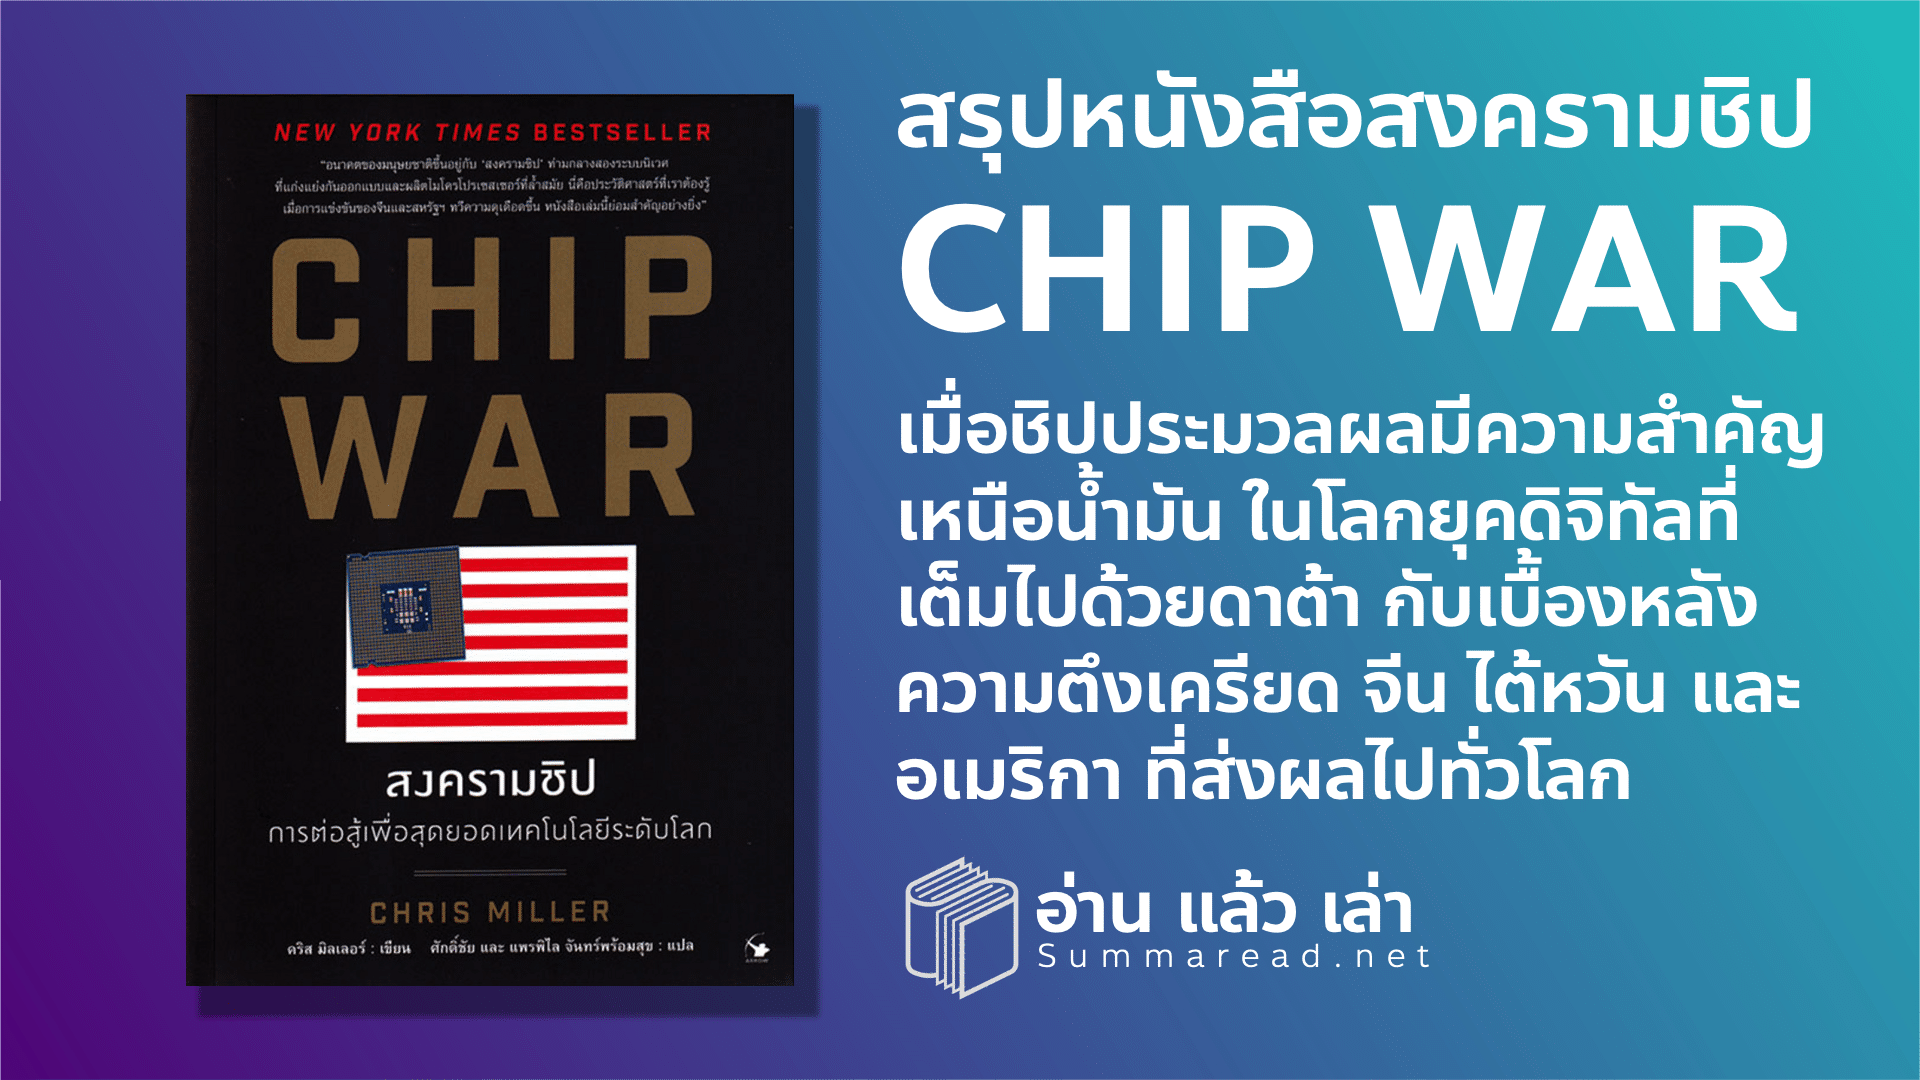 สรุปหนังสือ chip war สงครามชิป การต่อสู้เพื่อสุดยอดเทคโนโลยีระดับโลก Chris Miller เขียน ประวัติศาสตร์เรื่องราวของมหาอำนาจยุค AI